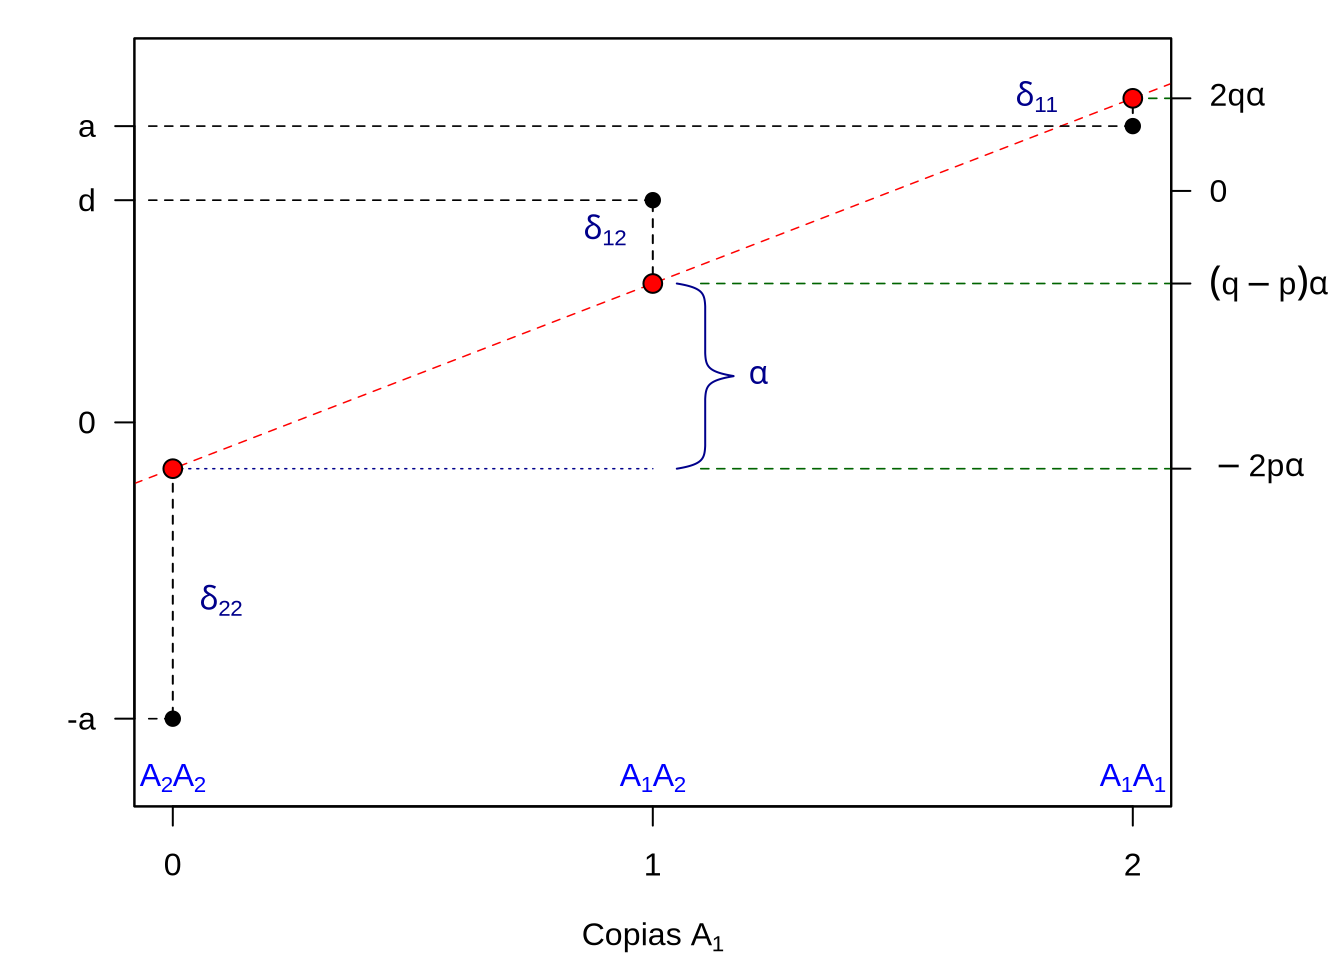 Representación gráfica de los valores genotípicos, círculos negros, valores de cría (o reproductivos), círculos rojos y la desviación entre ambos valores correspondiente al desvío de dominancia. La línea roja a trazos representa la recta de regresión de los valores genotípicos en el número de copias del alelo \(A_1\). La pendientes de dicha recta es \(\alpha\) (el efecto de sustitución) y los valores de las ordenadas de dicha recta para los puntos en las abscisas 0, 1 y 2 se corresponden con los valores de cría de los genotipos con dichos número de copias del alelo \(A_1\). Mientras que el eje de la izquierda refiere a los valores de los genotipos en la escala transformada, los valores del eje a la derecha se corresponden a desvíos de la media \(M=a(p-q)+2pqd\). Los valores usados para la representación fueron \(d=\frac{3}{4}a\) y \(p=\frac{3}{4}\). Figura de elaboración propia sobre idea en Douglas S. Falconer (1983).